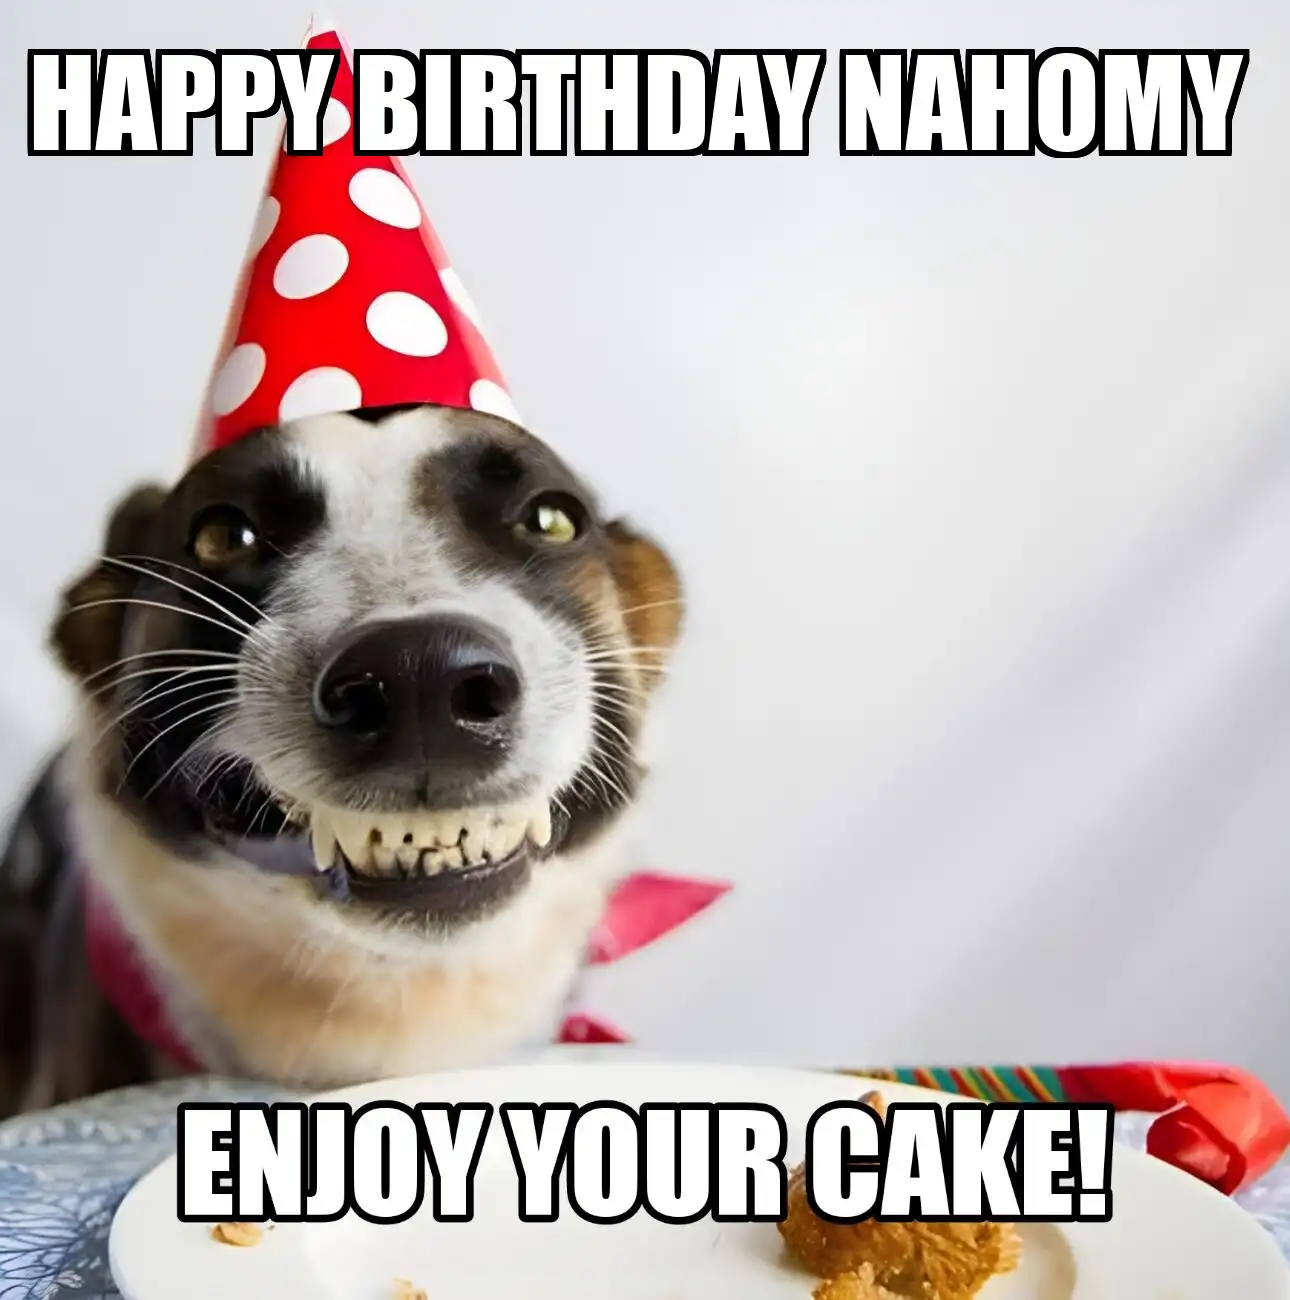 Happy Birthday Nahomy Enjoy Your Cake Dog Meme